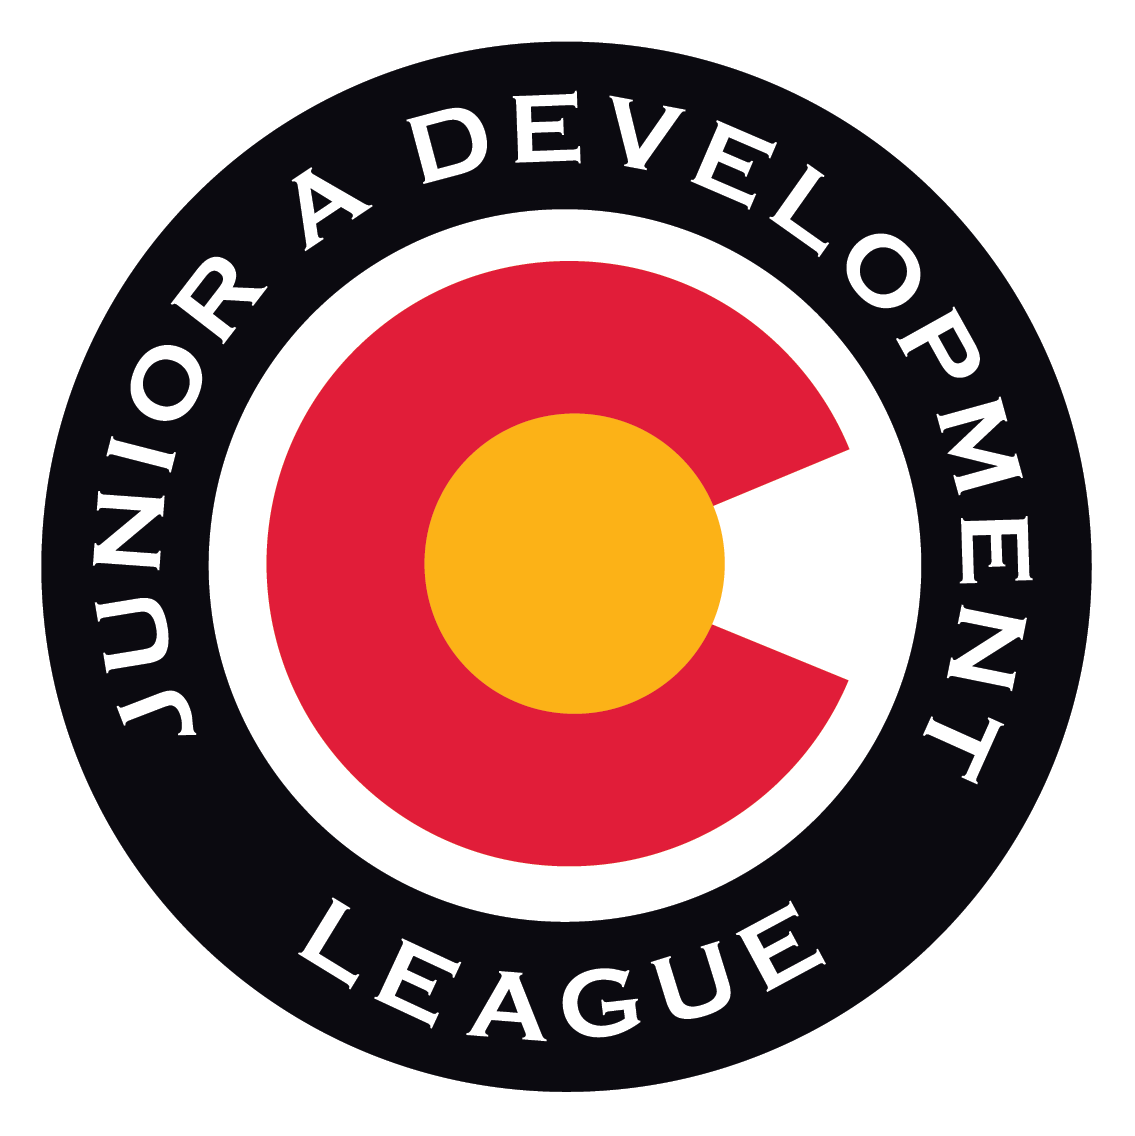 Colorado Junior A Development League